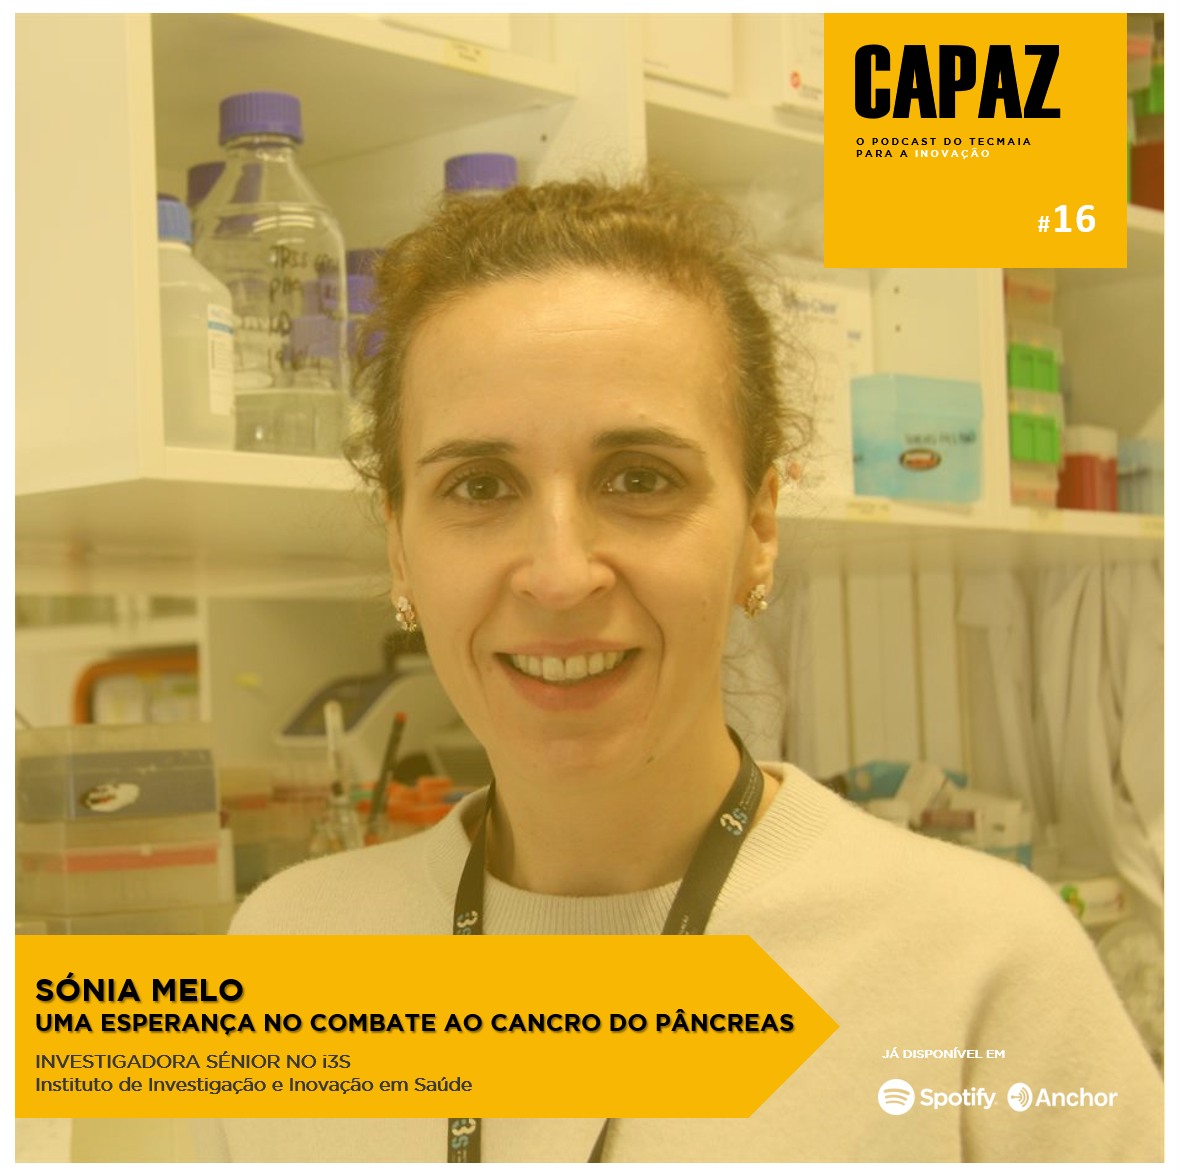 CAPAZ #16 - Sónia Melo e o combate ao cancro do pâncreas